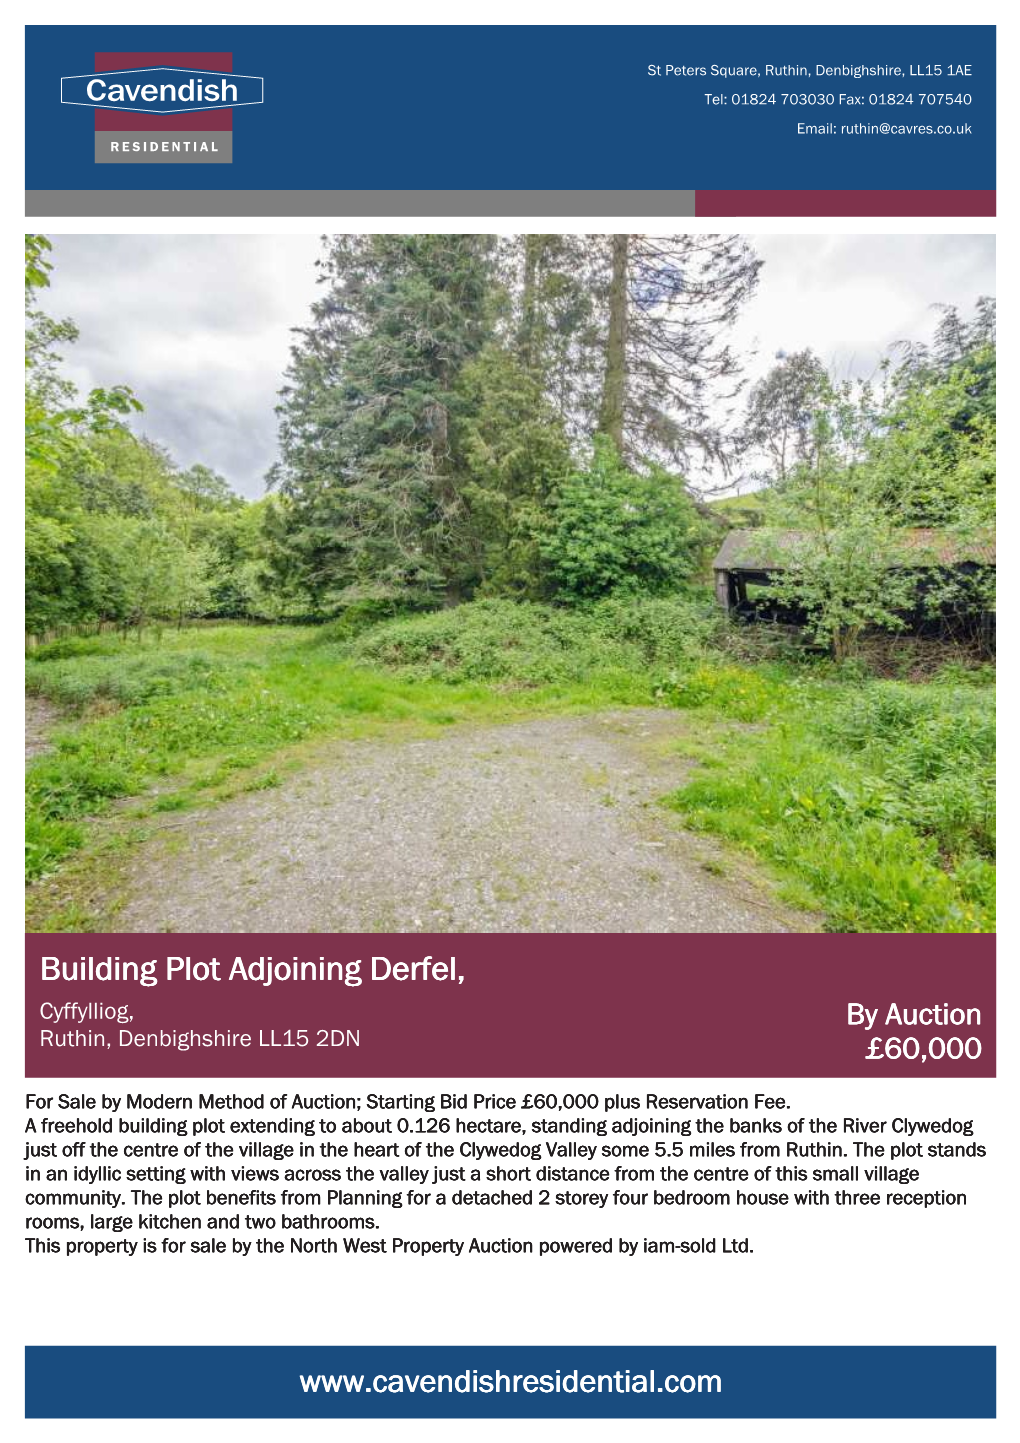 Building Plot Adjoining Derfel, Cyffylliog, by Auction Ruthin, Denbighshire LL15 2DN £60,000